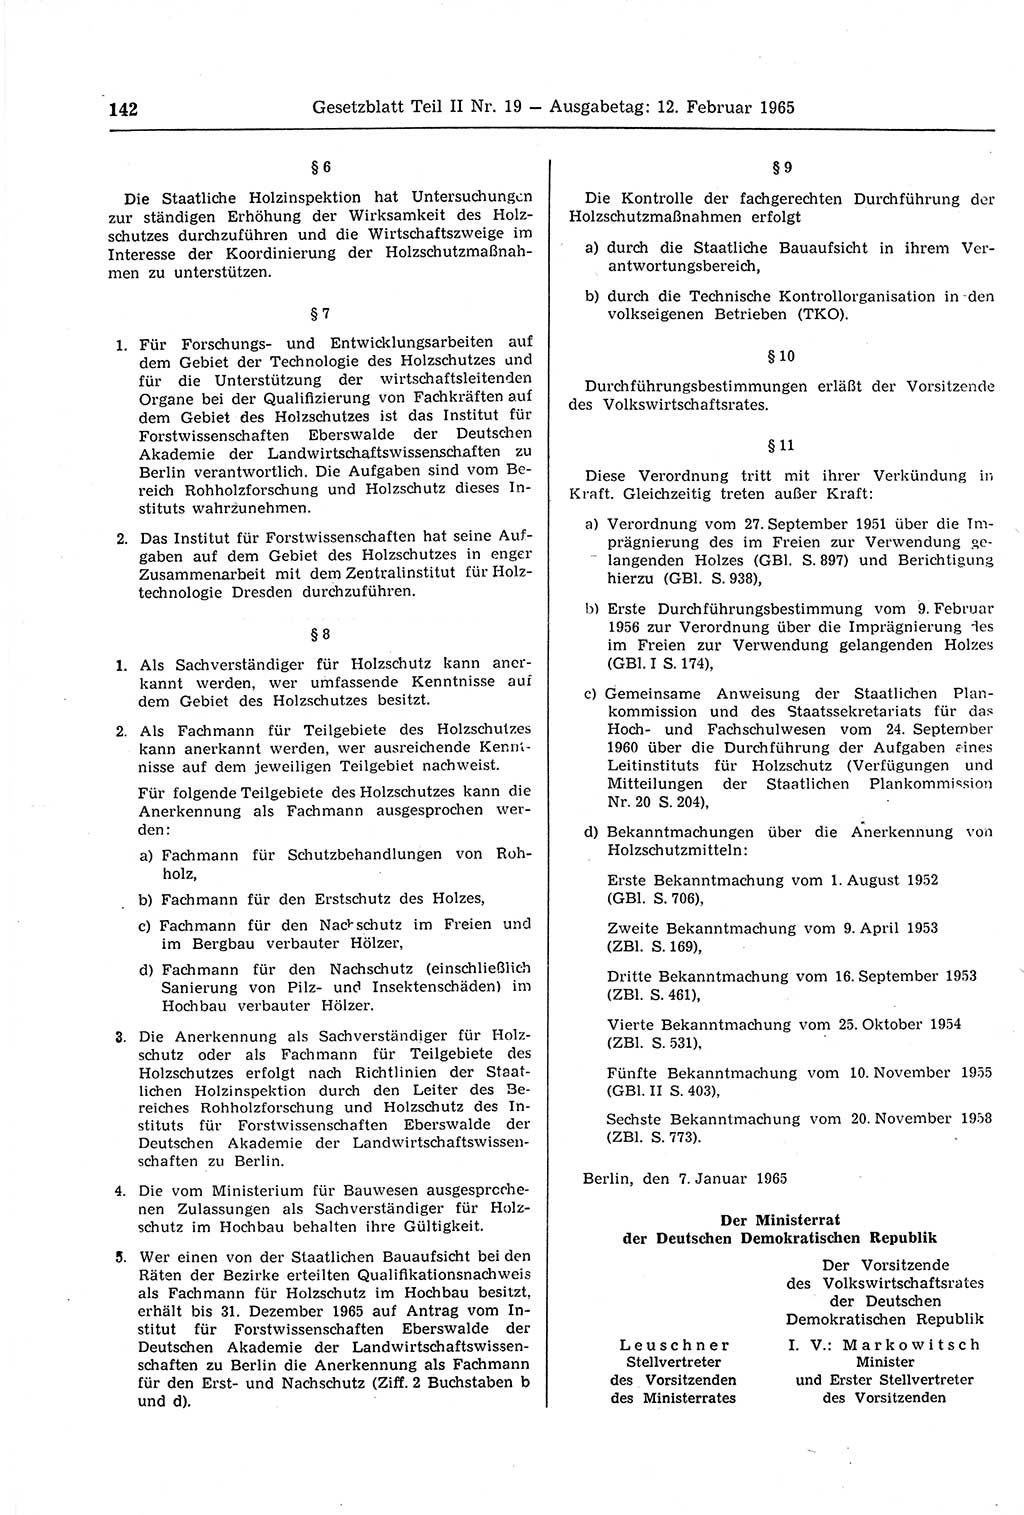 Gesetzblatt (GBl.) der Deutschen Demokratischen Republik (DDR) Teil ⅠⅠ 1965, Seite 142 (GBl. DDR ⅠⅠ 1965, S. 142)